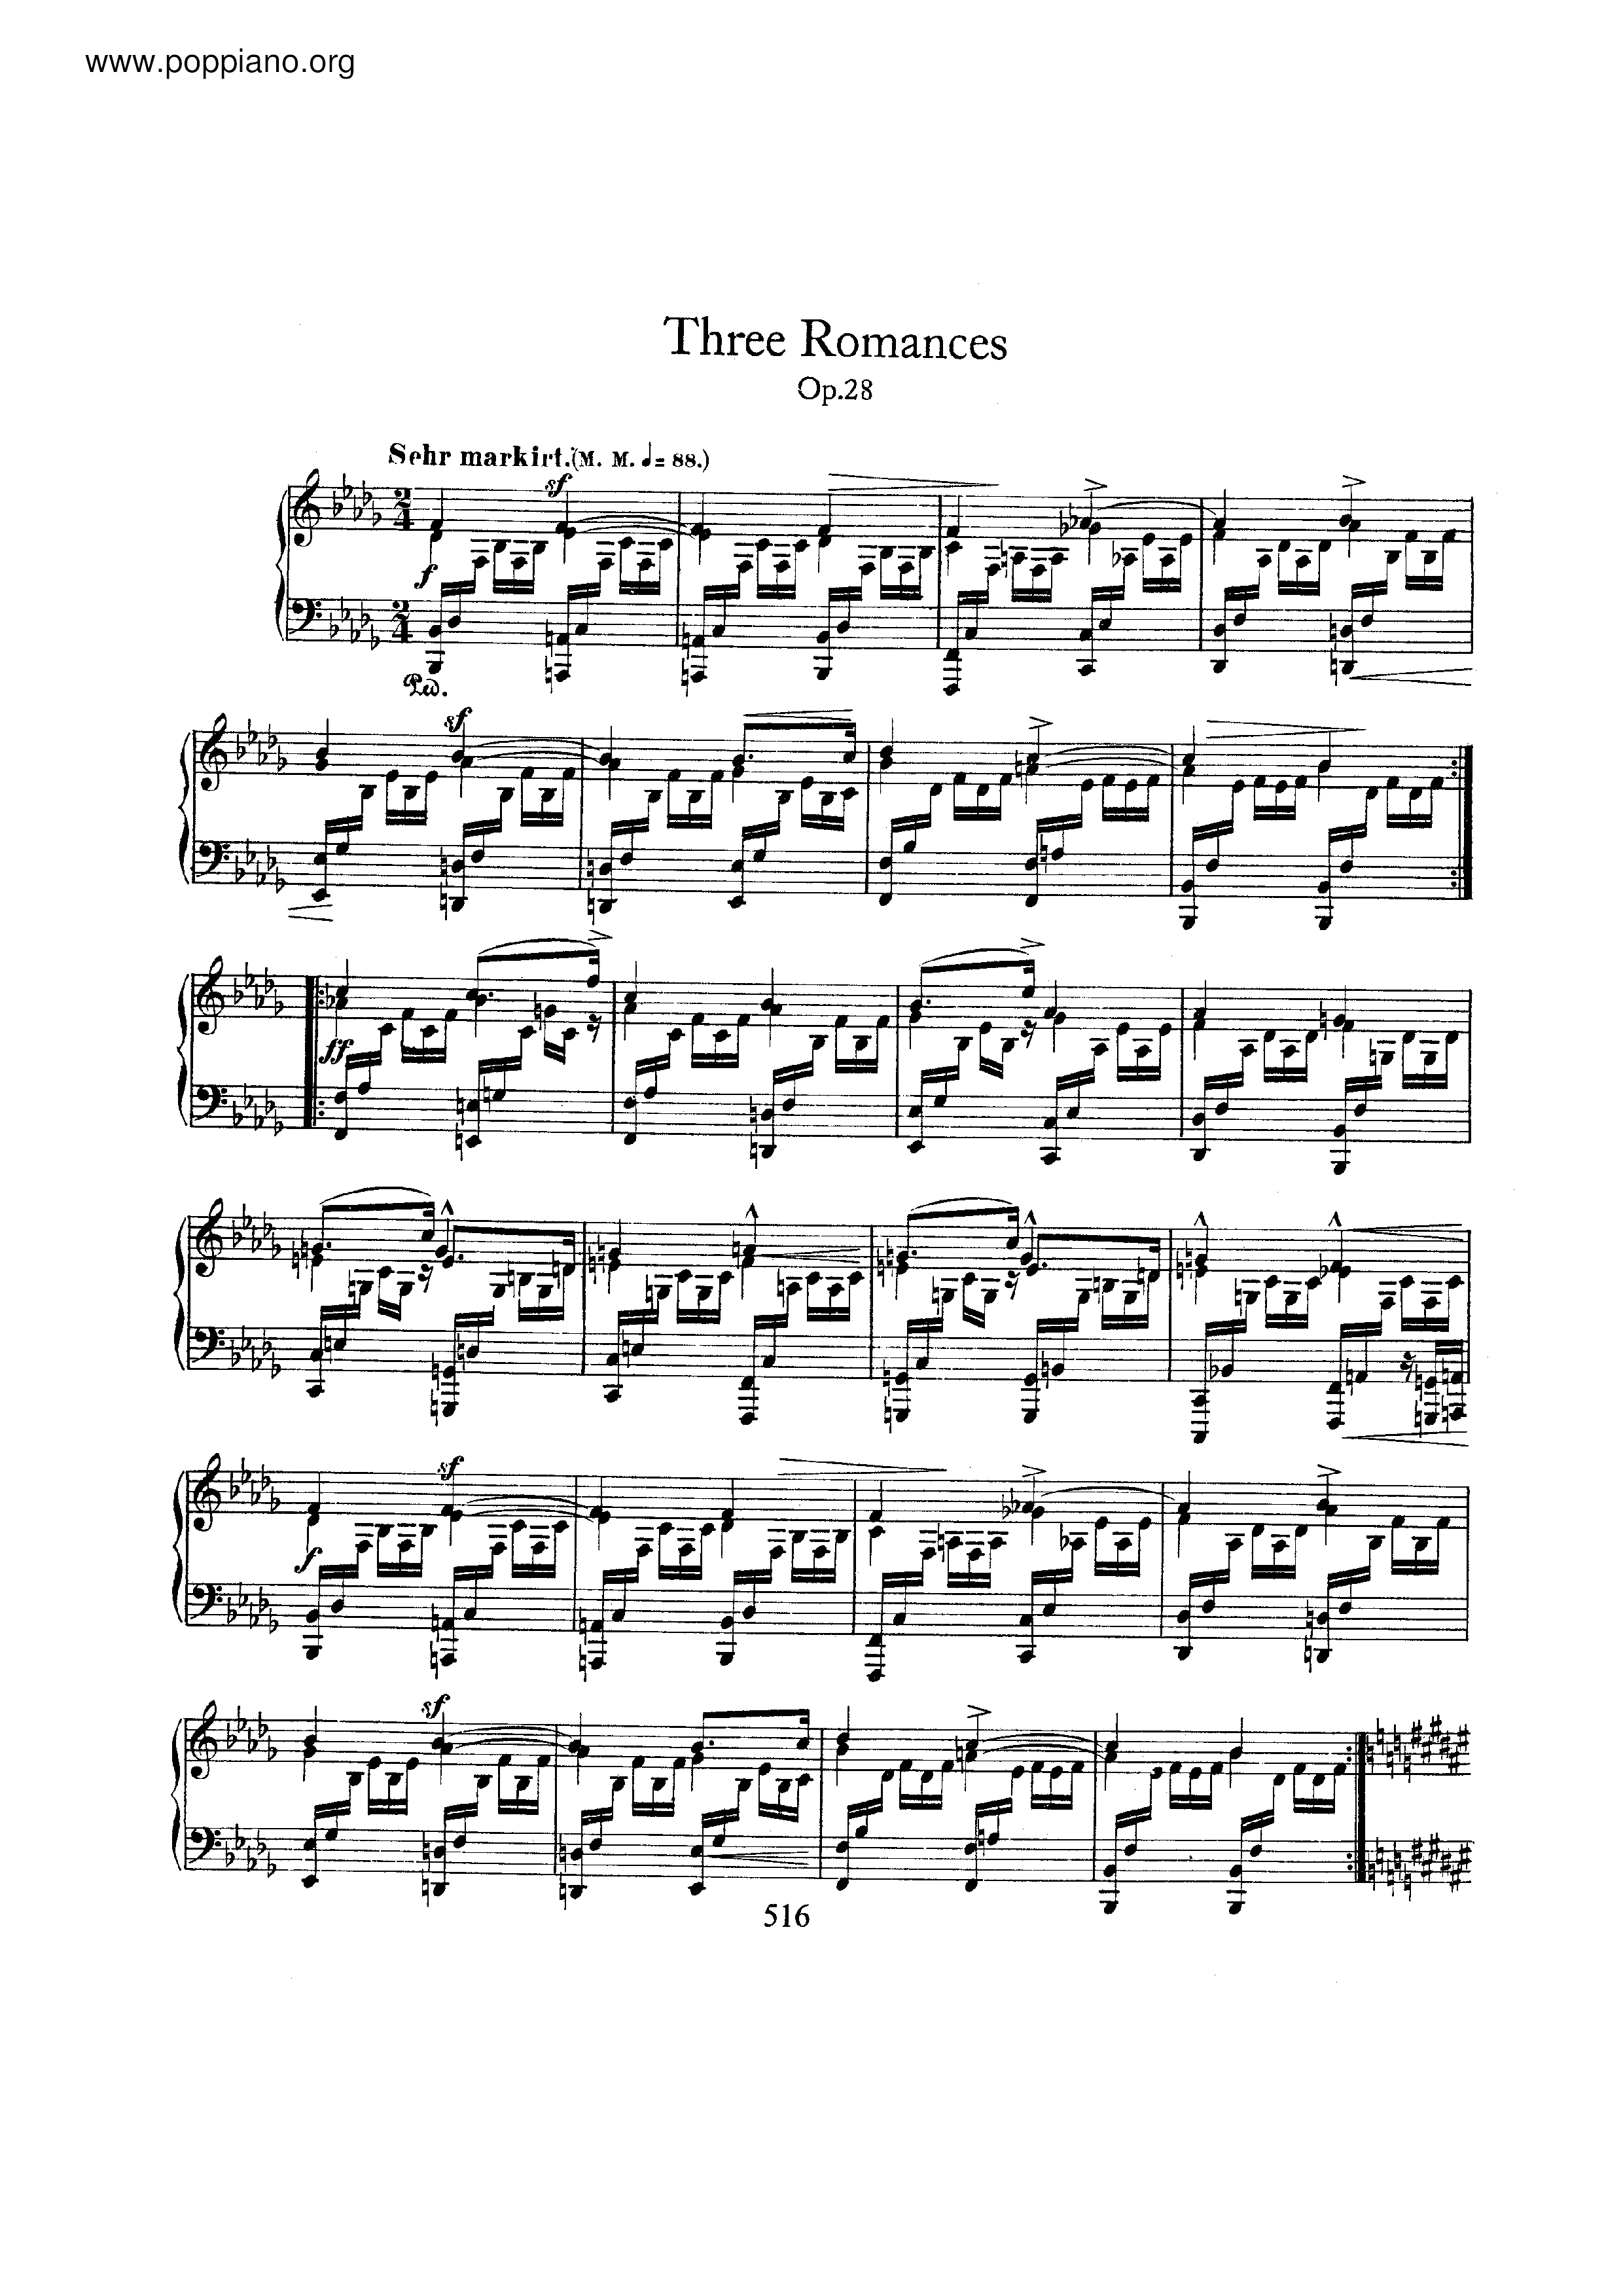 3 Romances, Op.28ピアノ譜